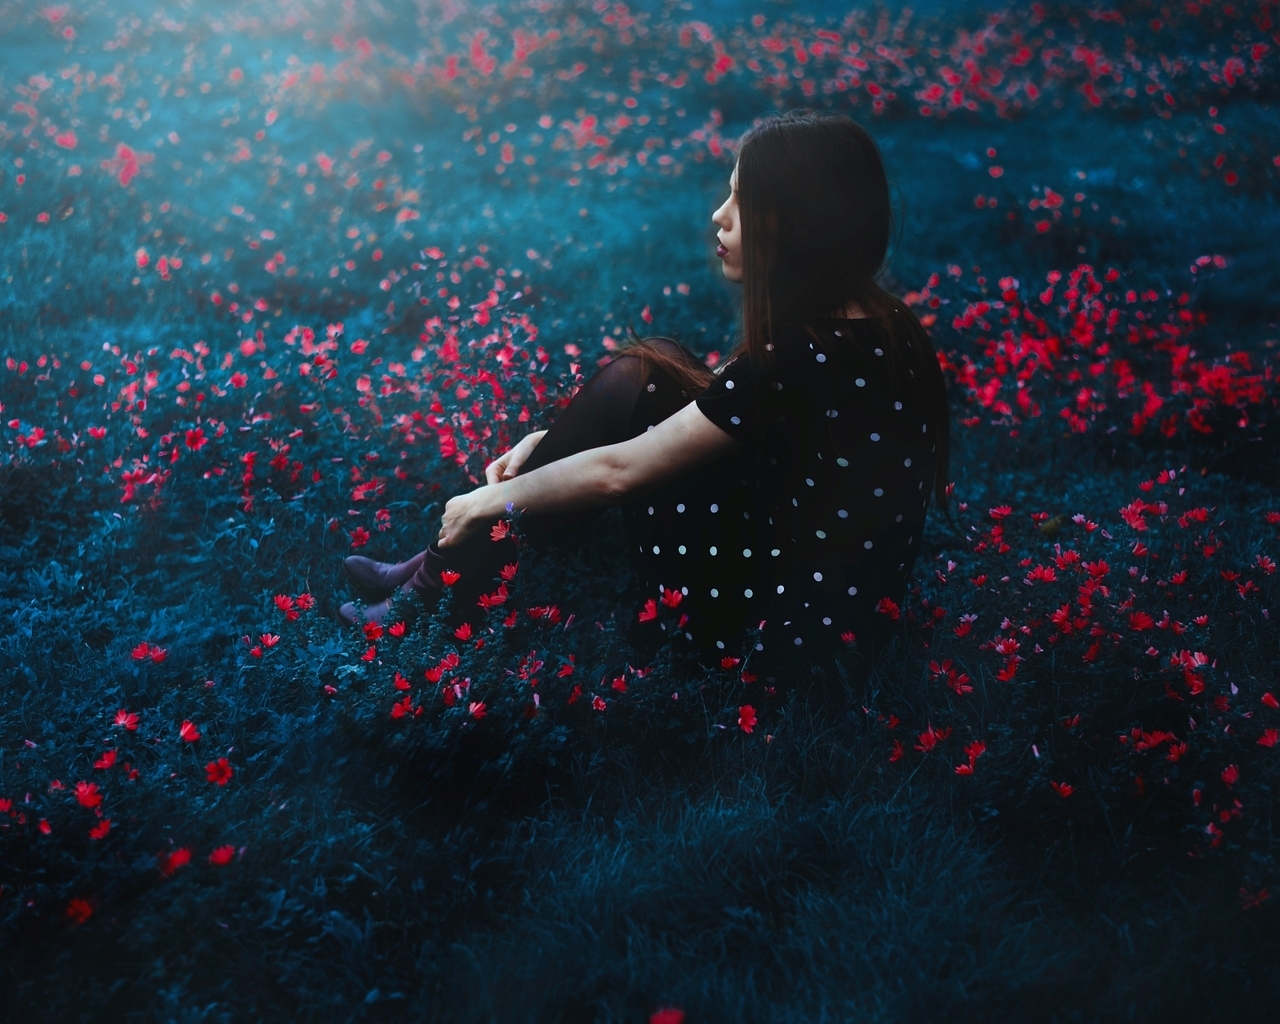 Картинка: Девушка, сидит, красные цветочки, поляна, трава, настроение